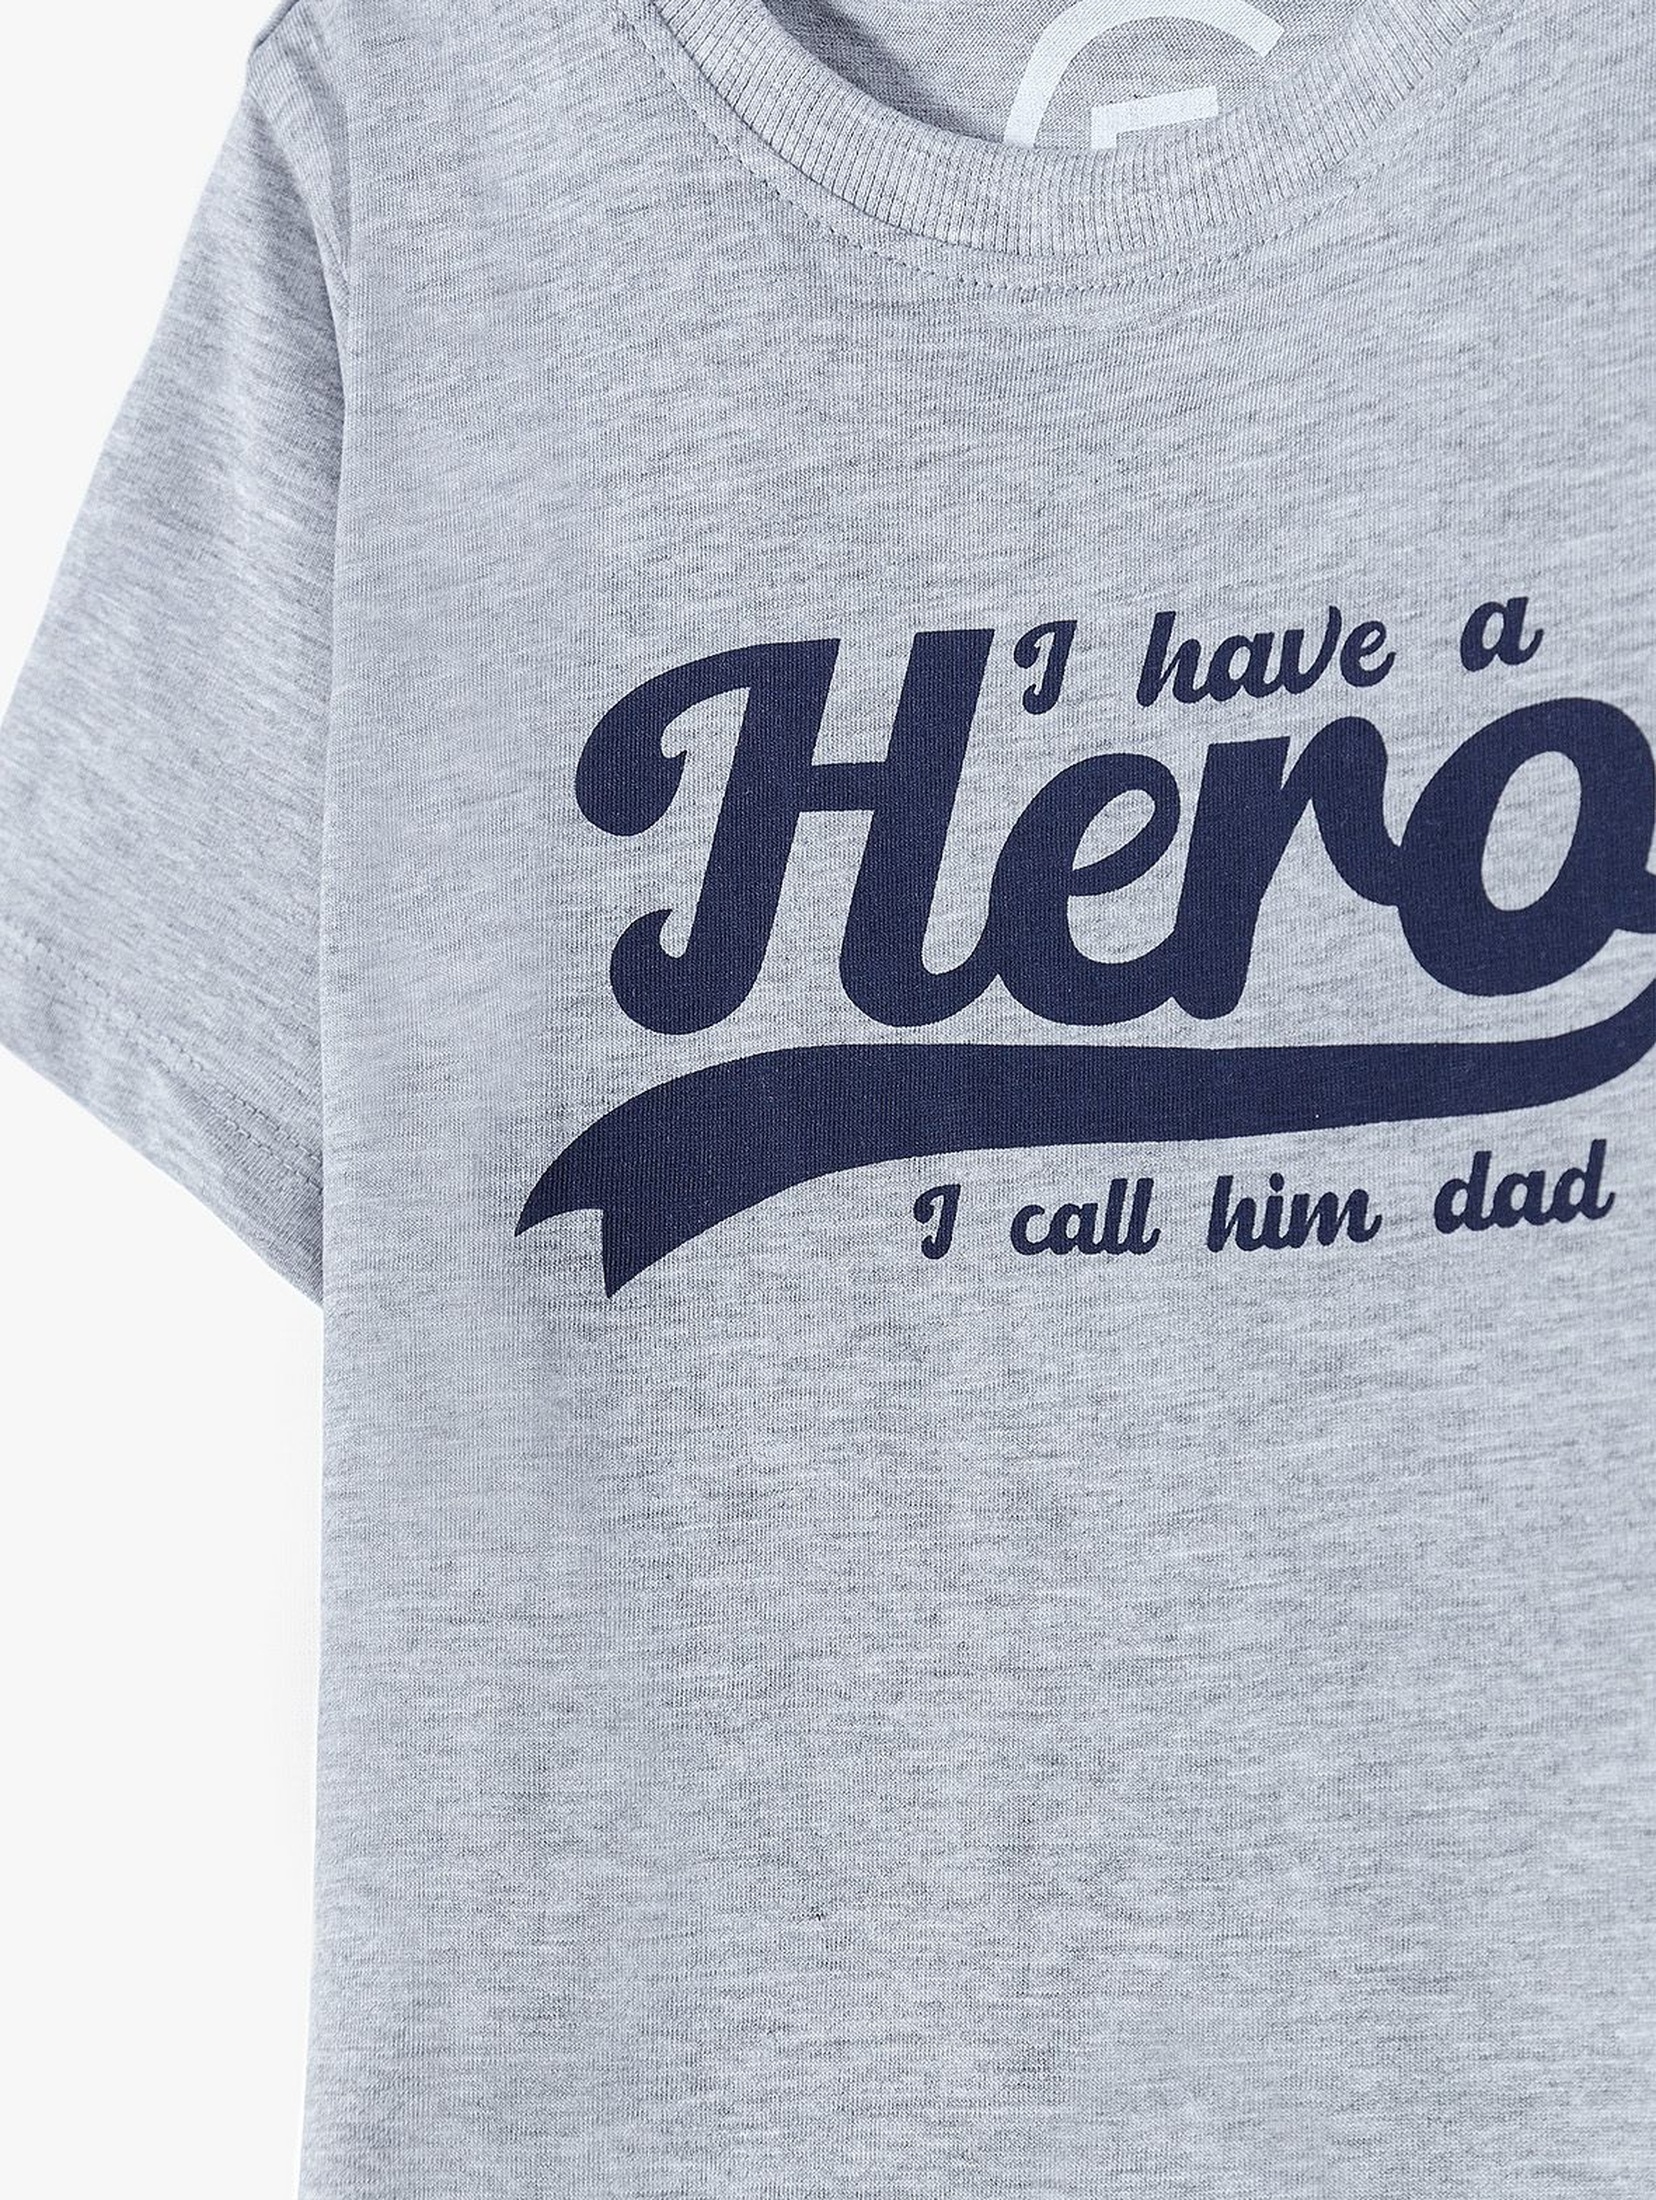 T-shirt chłopięcy szary z napisem-Hero - ubrania dla całej rodziny